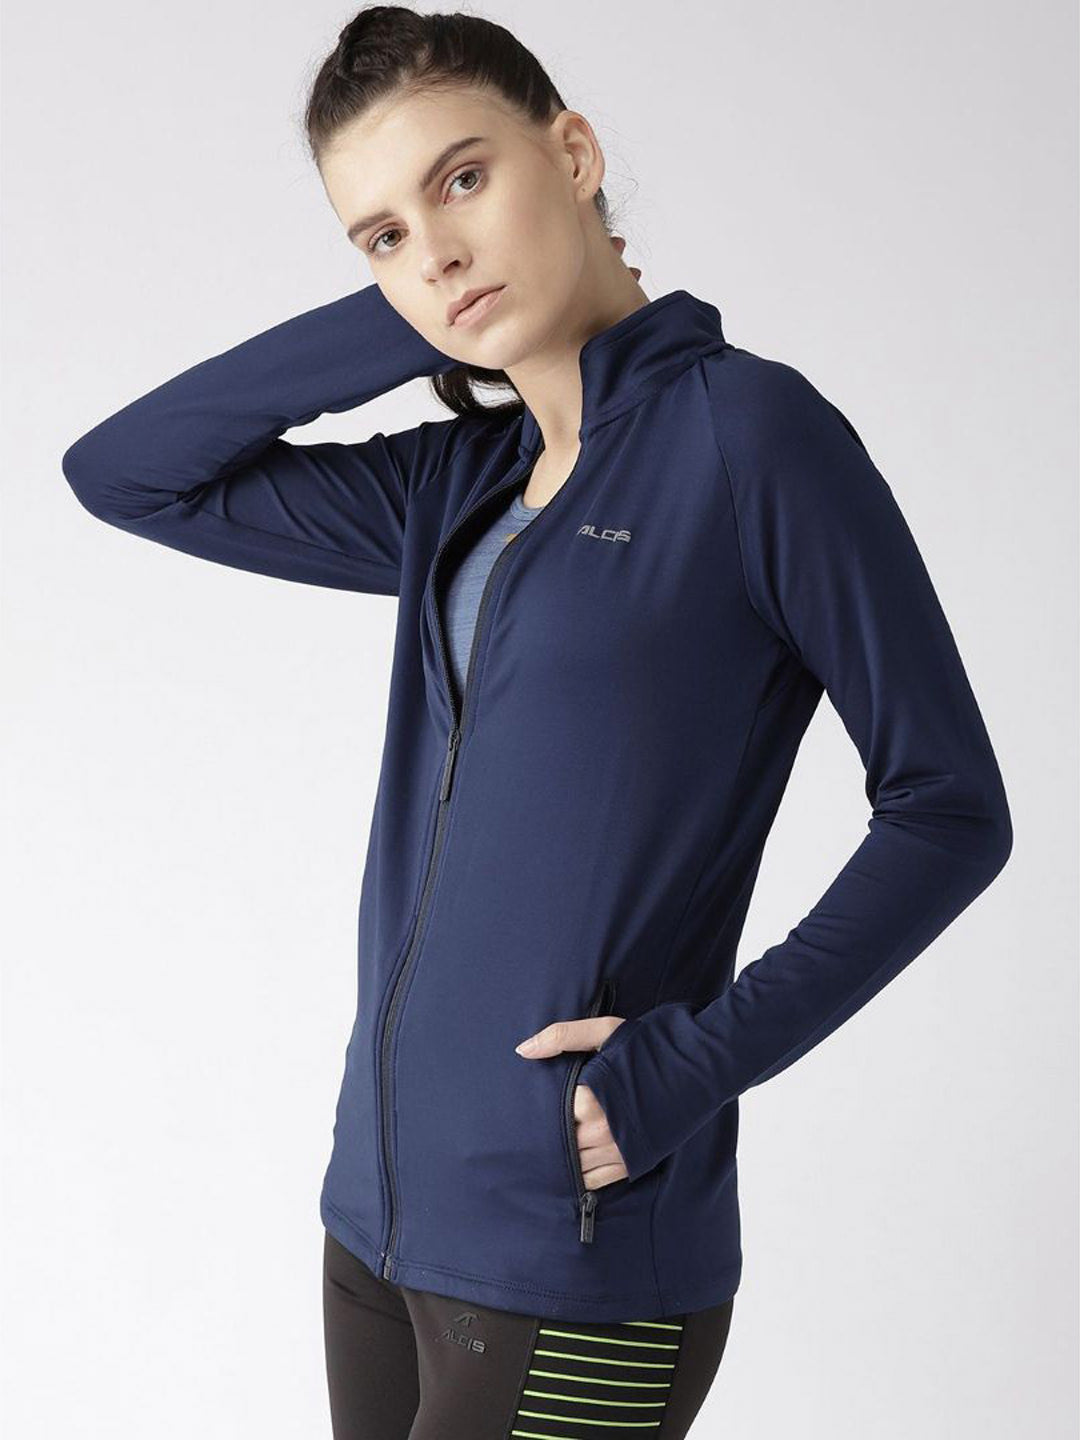 Alcis Women Navy Blue Solid Running Jacket